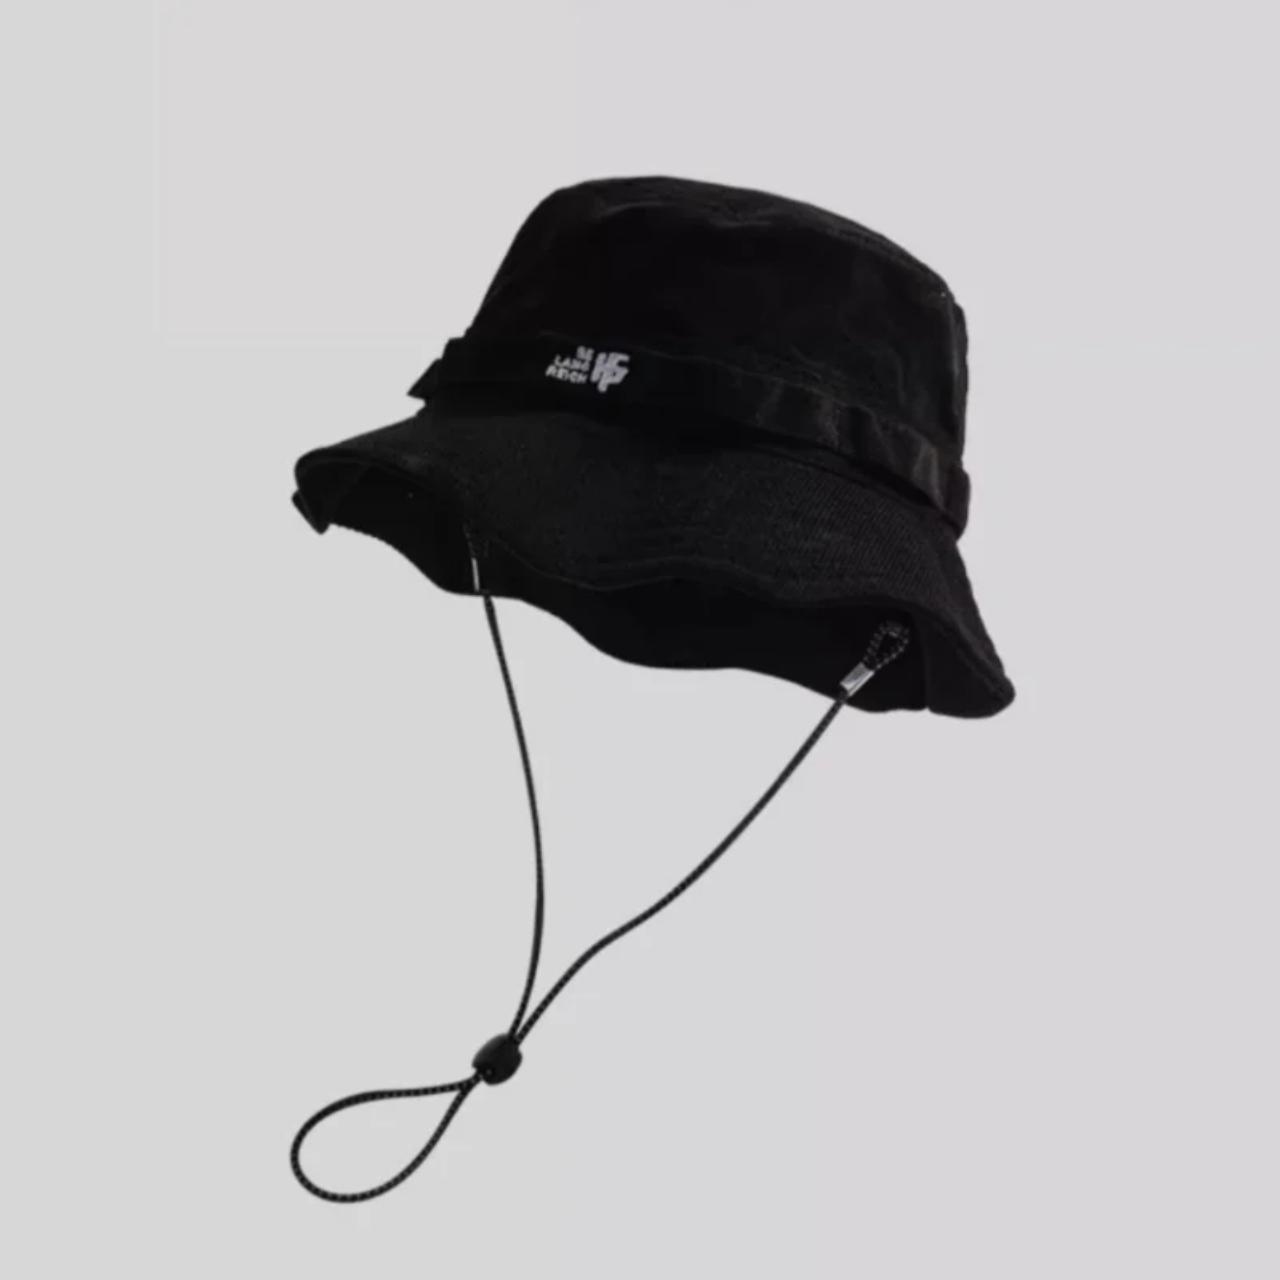 Sun hats for men outdoor comfortable fishing cap ... - Depop